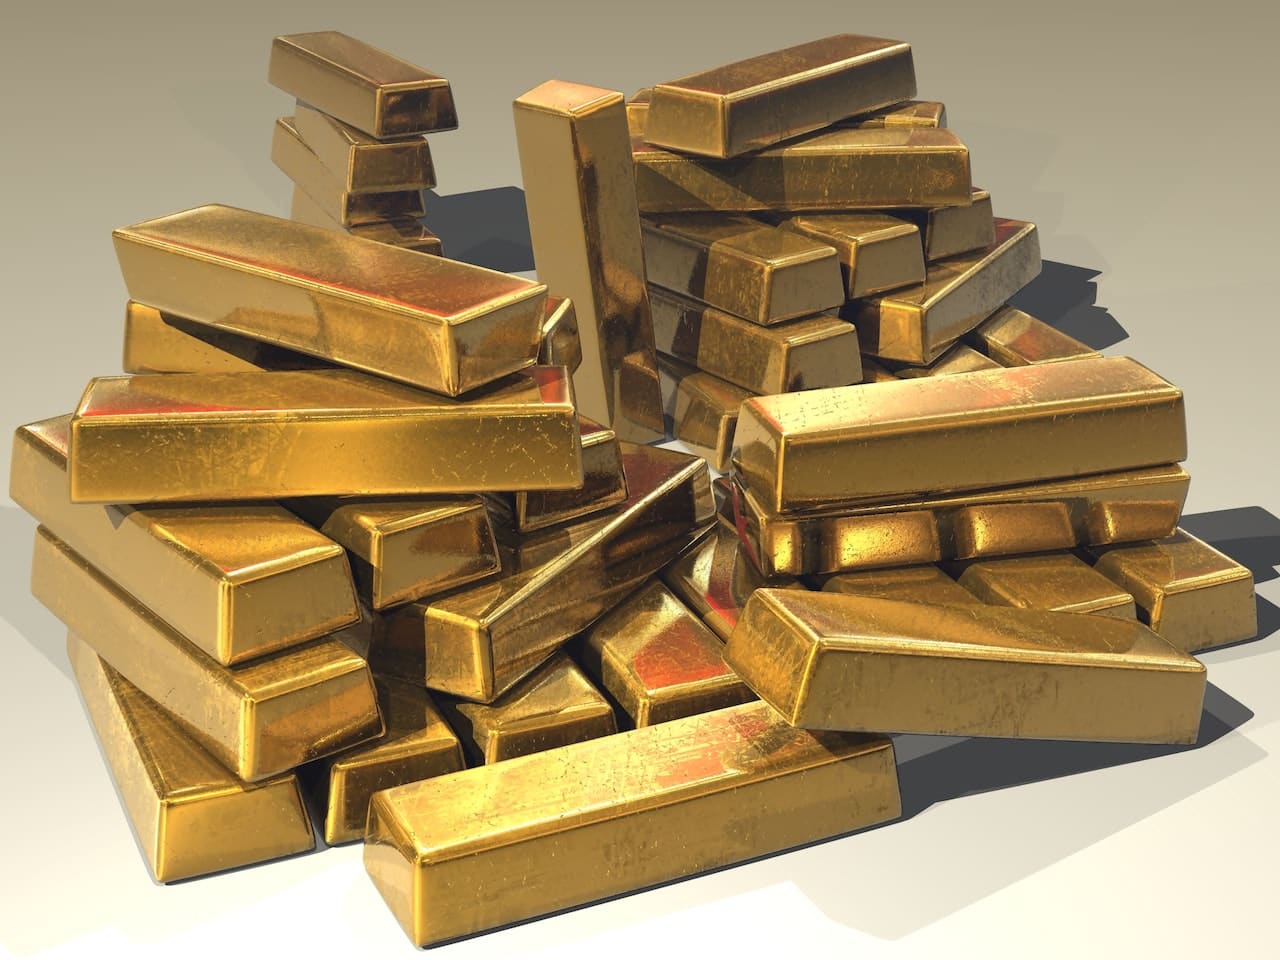 O preço do ouro subiu devido a indicadores econômicos, mas a perspectiva de juros restritivos pode limitar os ganhos.